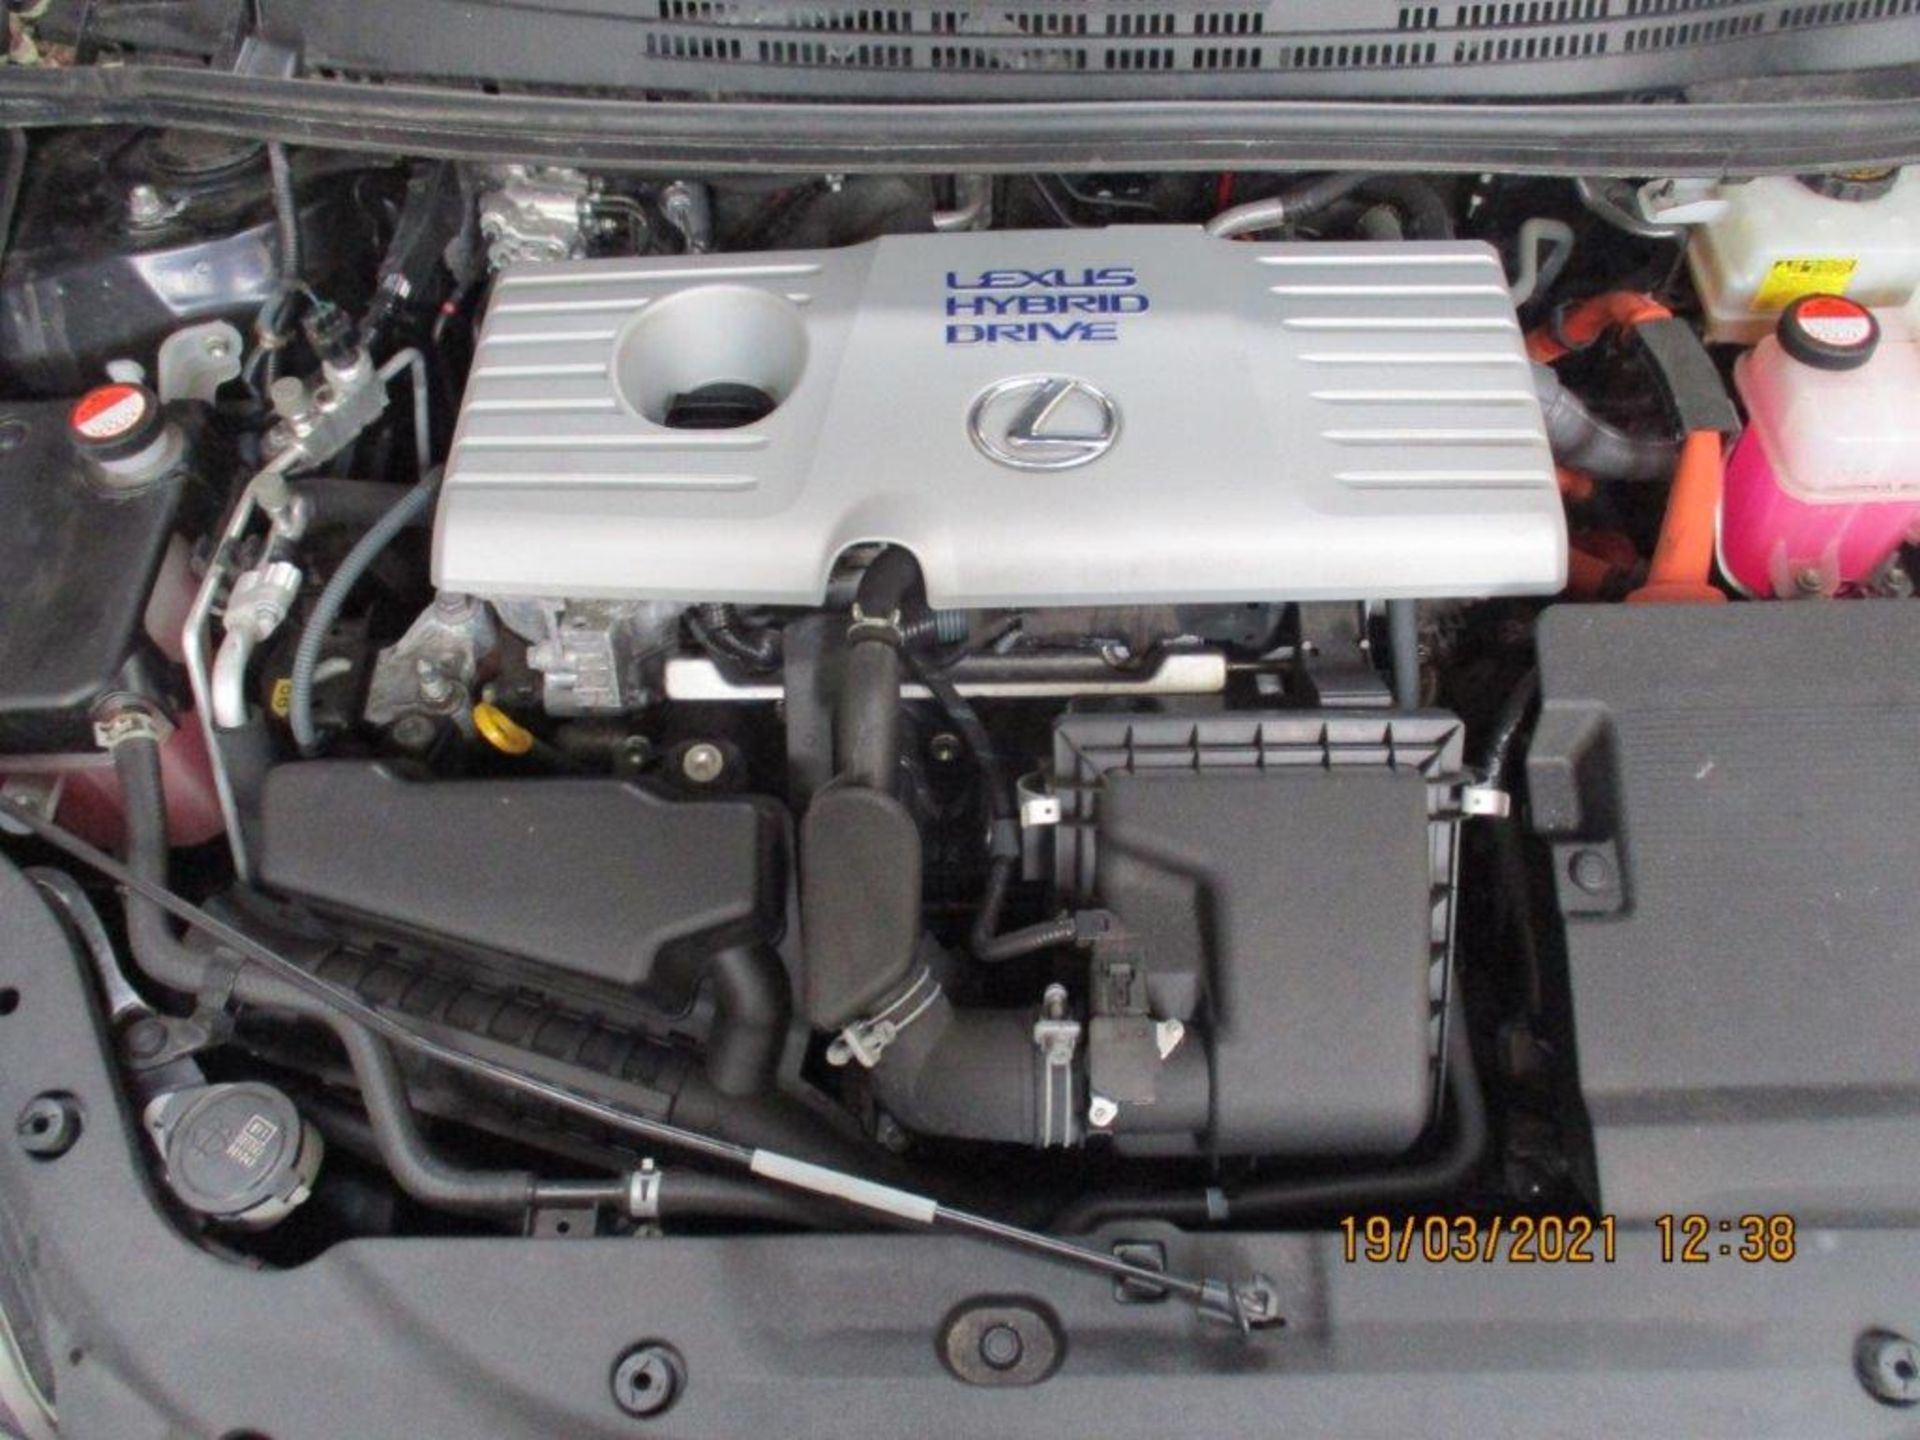 64 14 Lexus CT 200H Premier CVT - Image 9 of 28